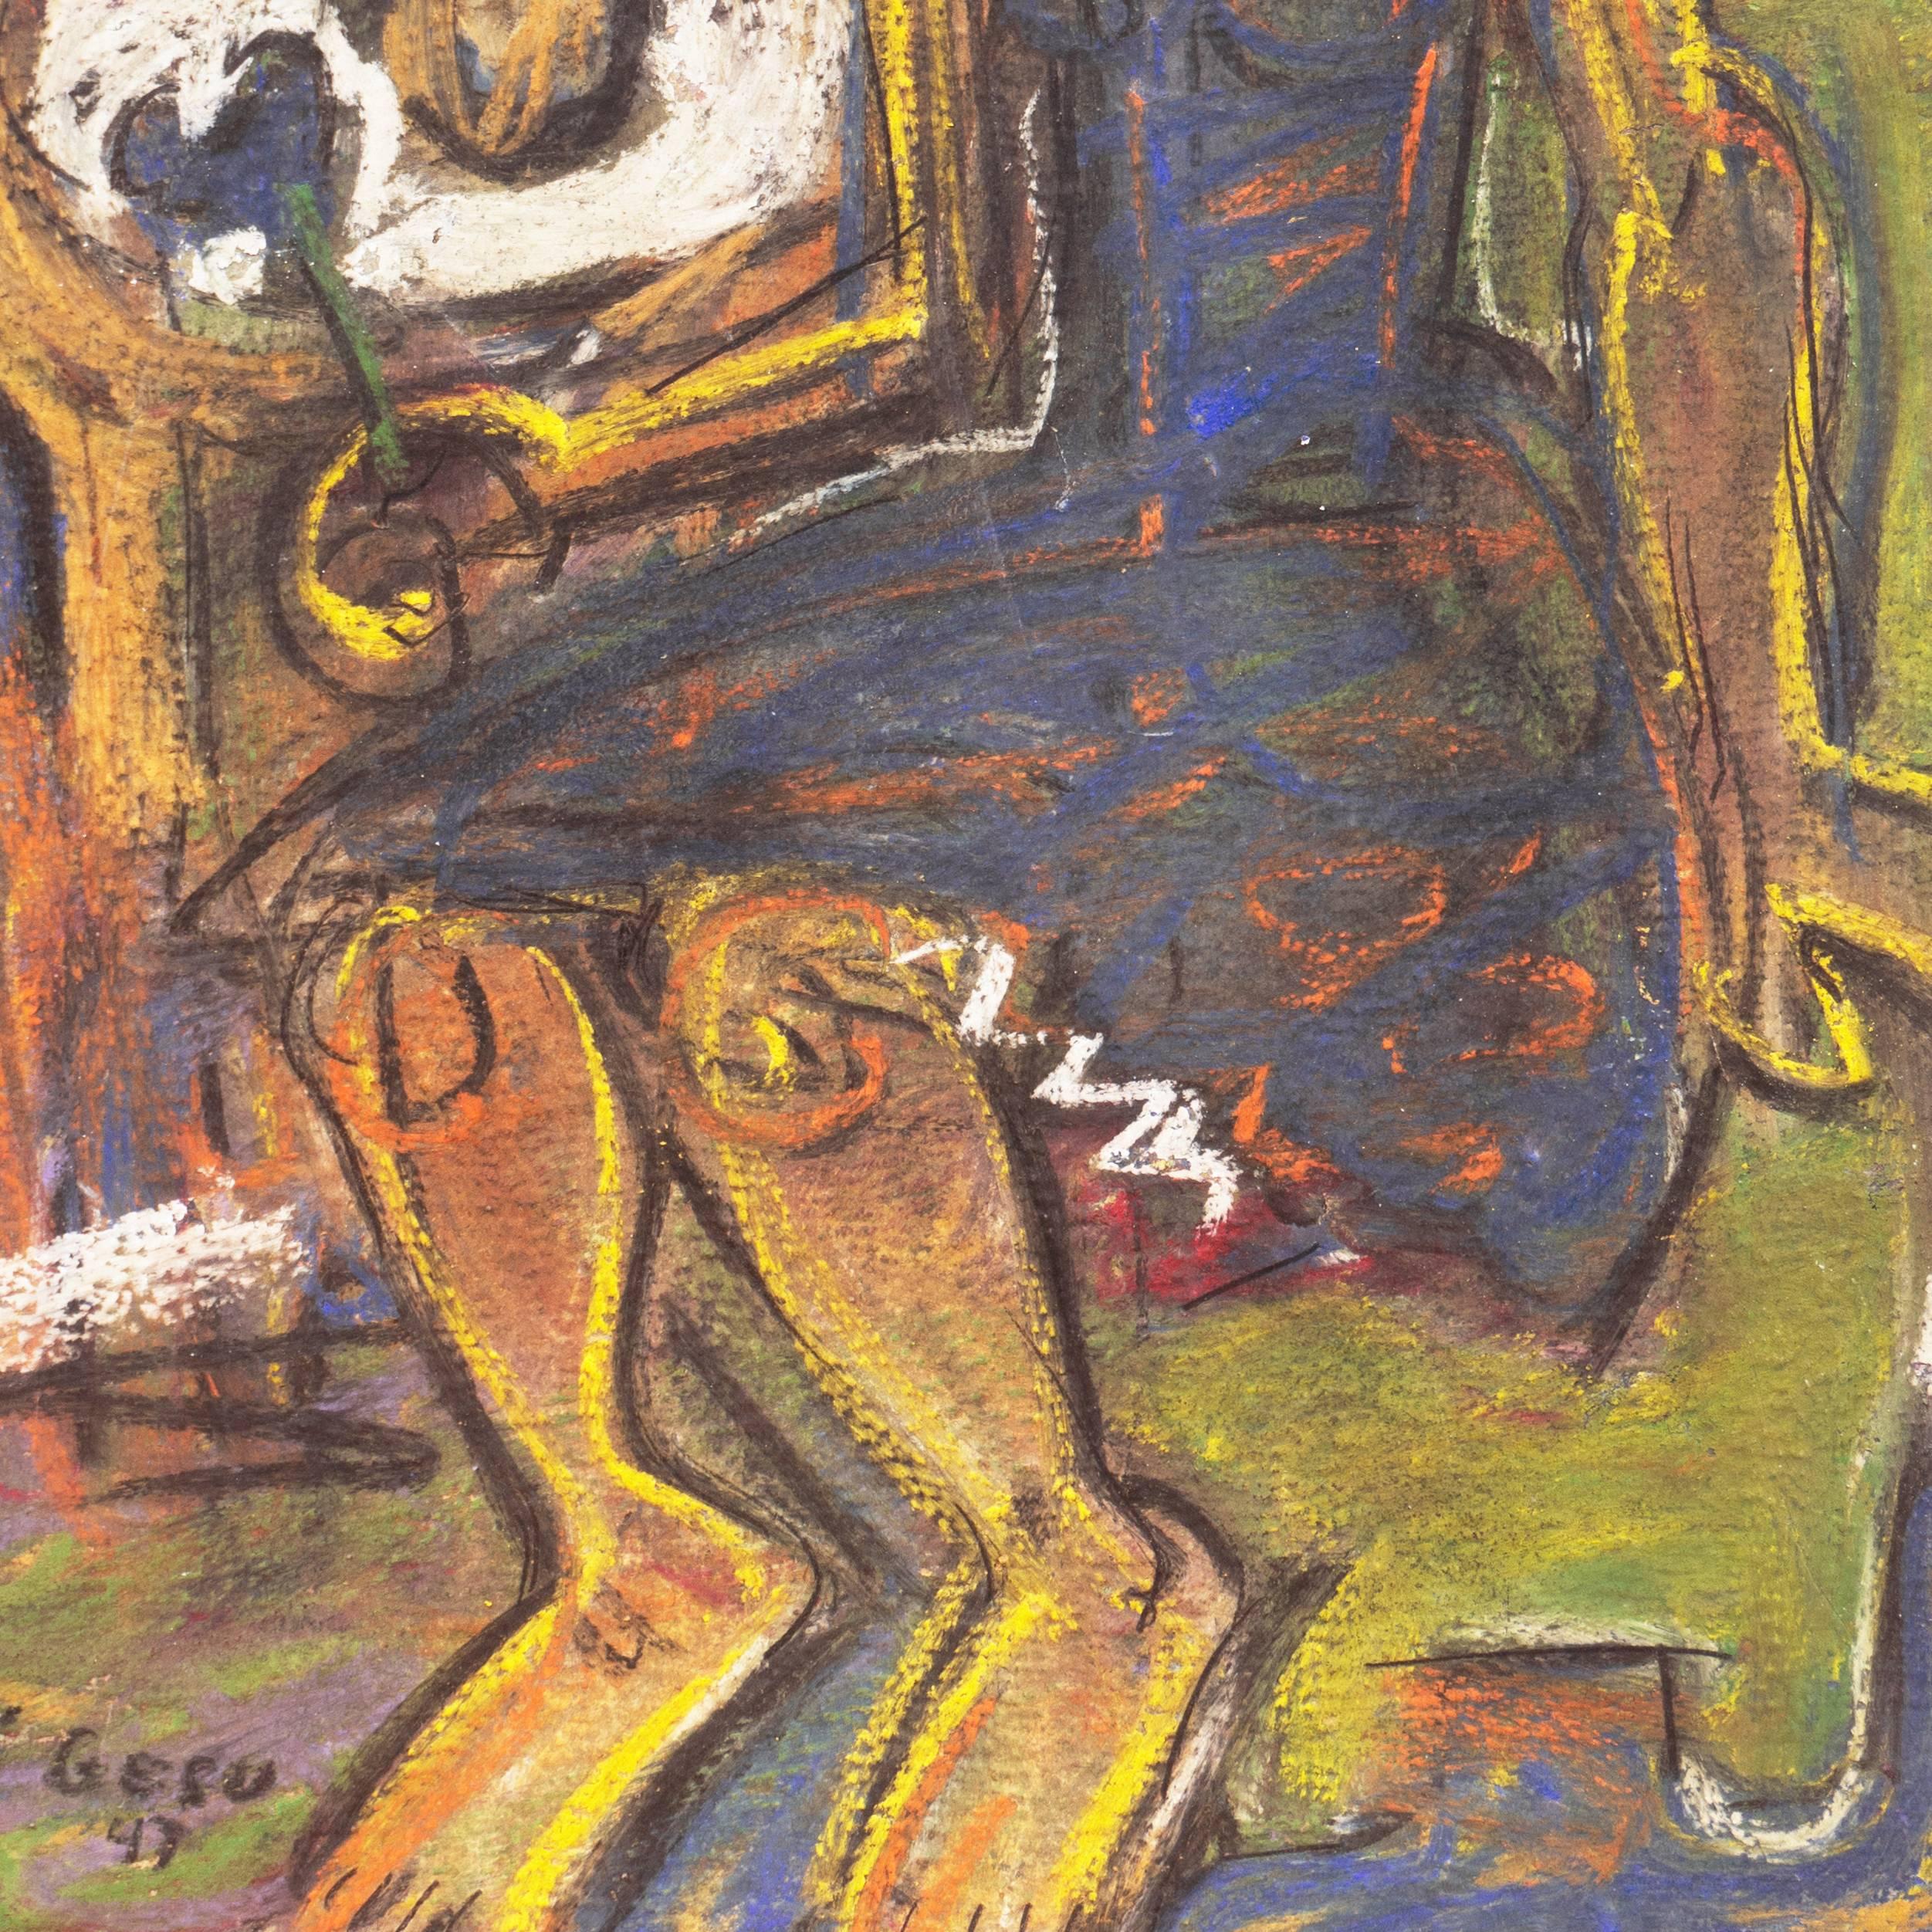 Figürliches Pastell, das eine junge Frau in einem kobaltblauen Kleid zeigt, die auf einem olivgrünen Stuhl sitzt und eine Blume in der Hand hält, neben einer Blumenvase auf einem Beistelltisch.

Signiert unten links, 